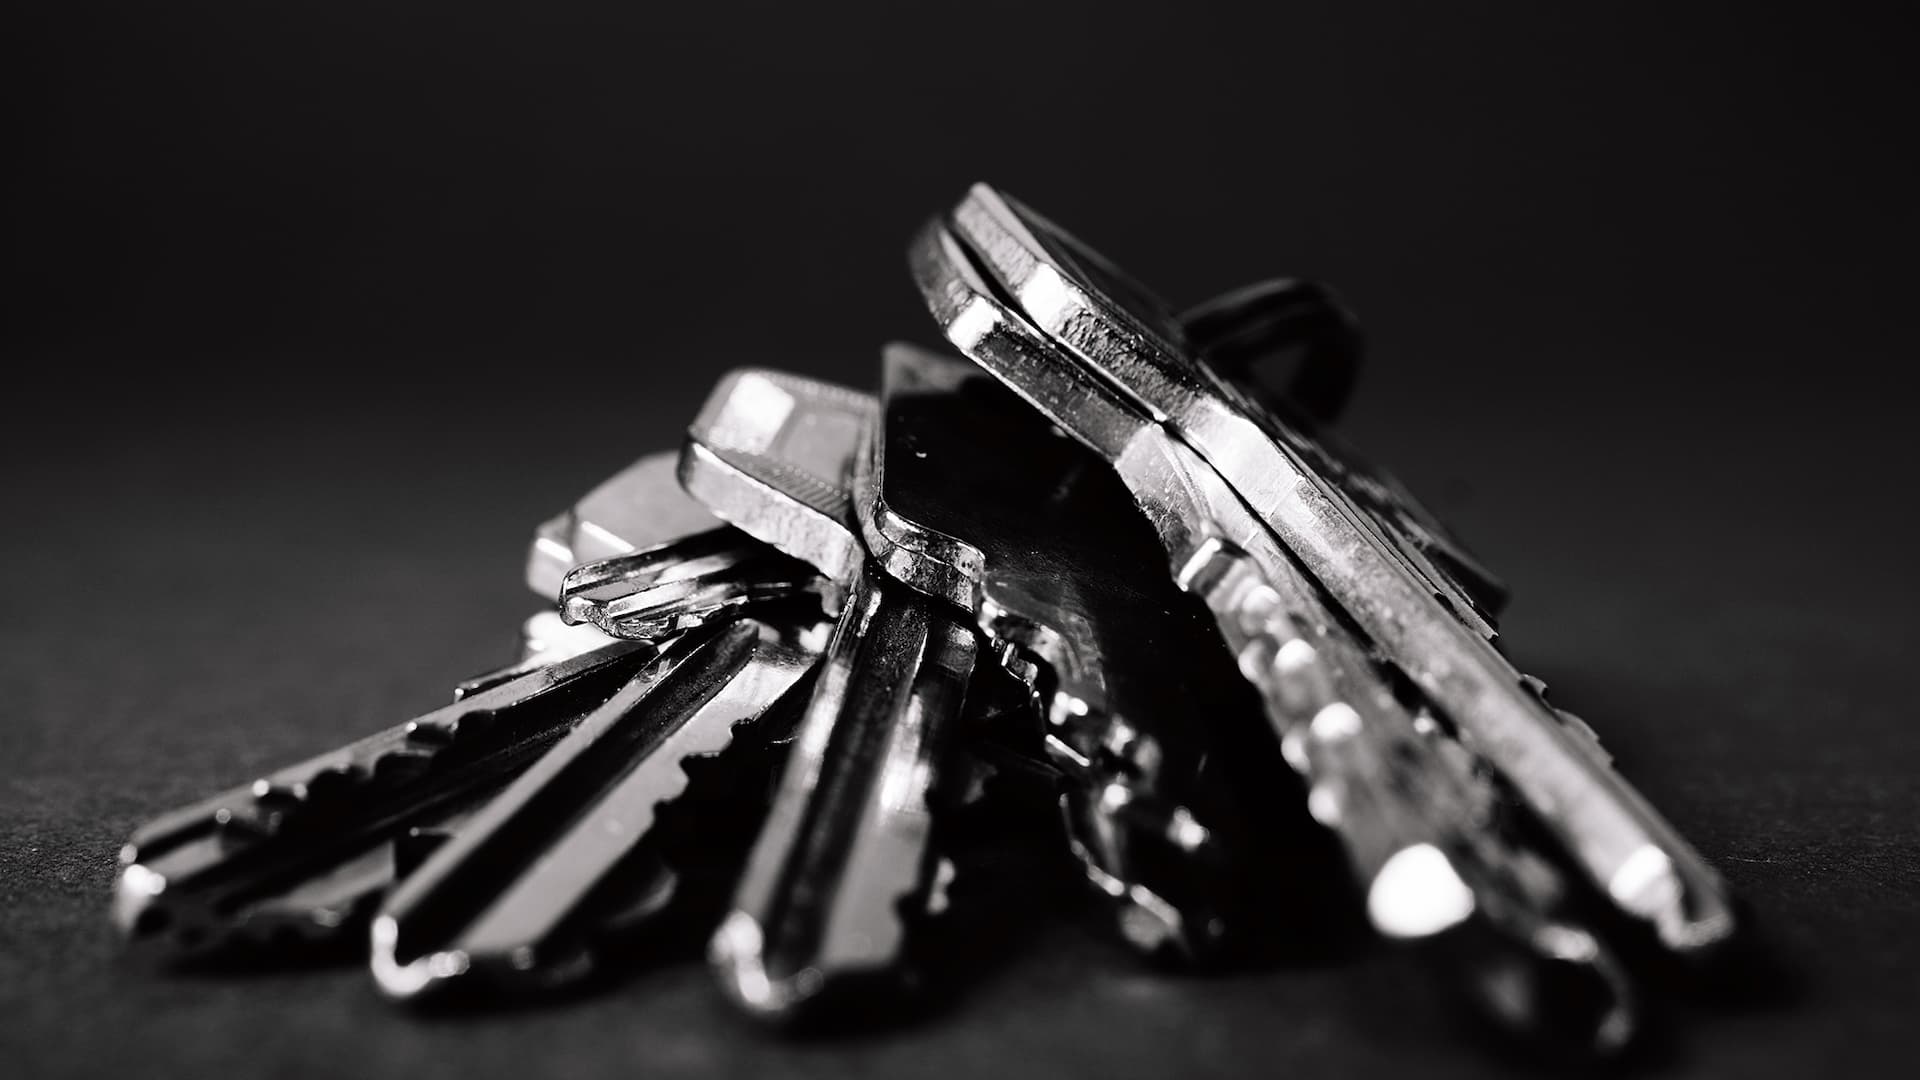 Närbild av nyckelknippa med nycklar i rostfritt stål mot svart bakgrund.